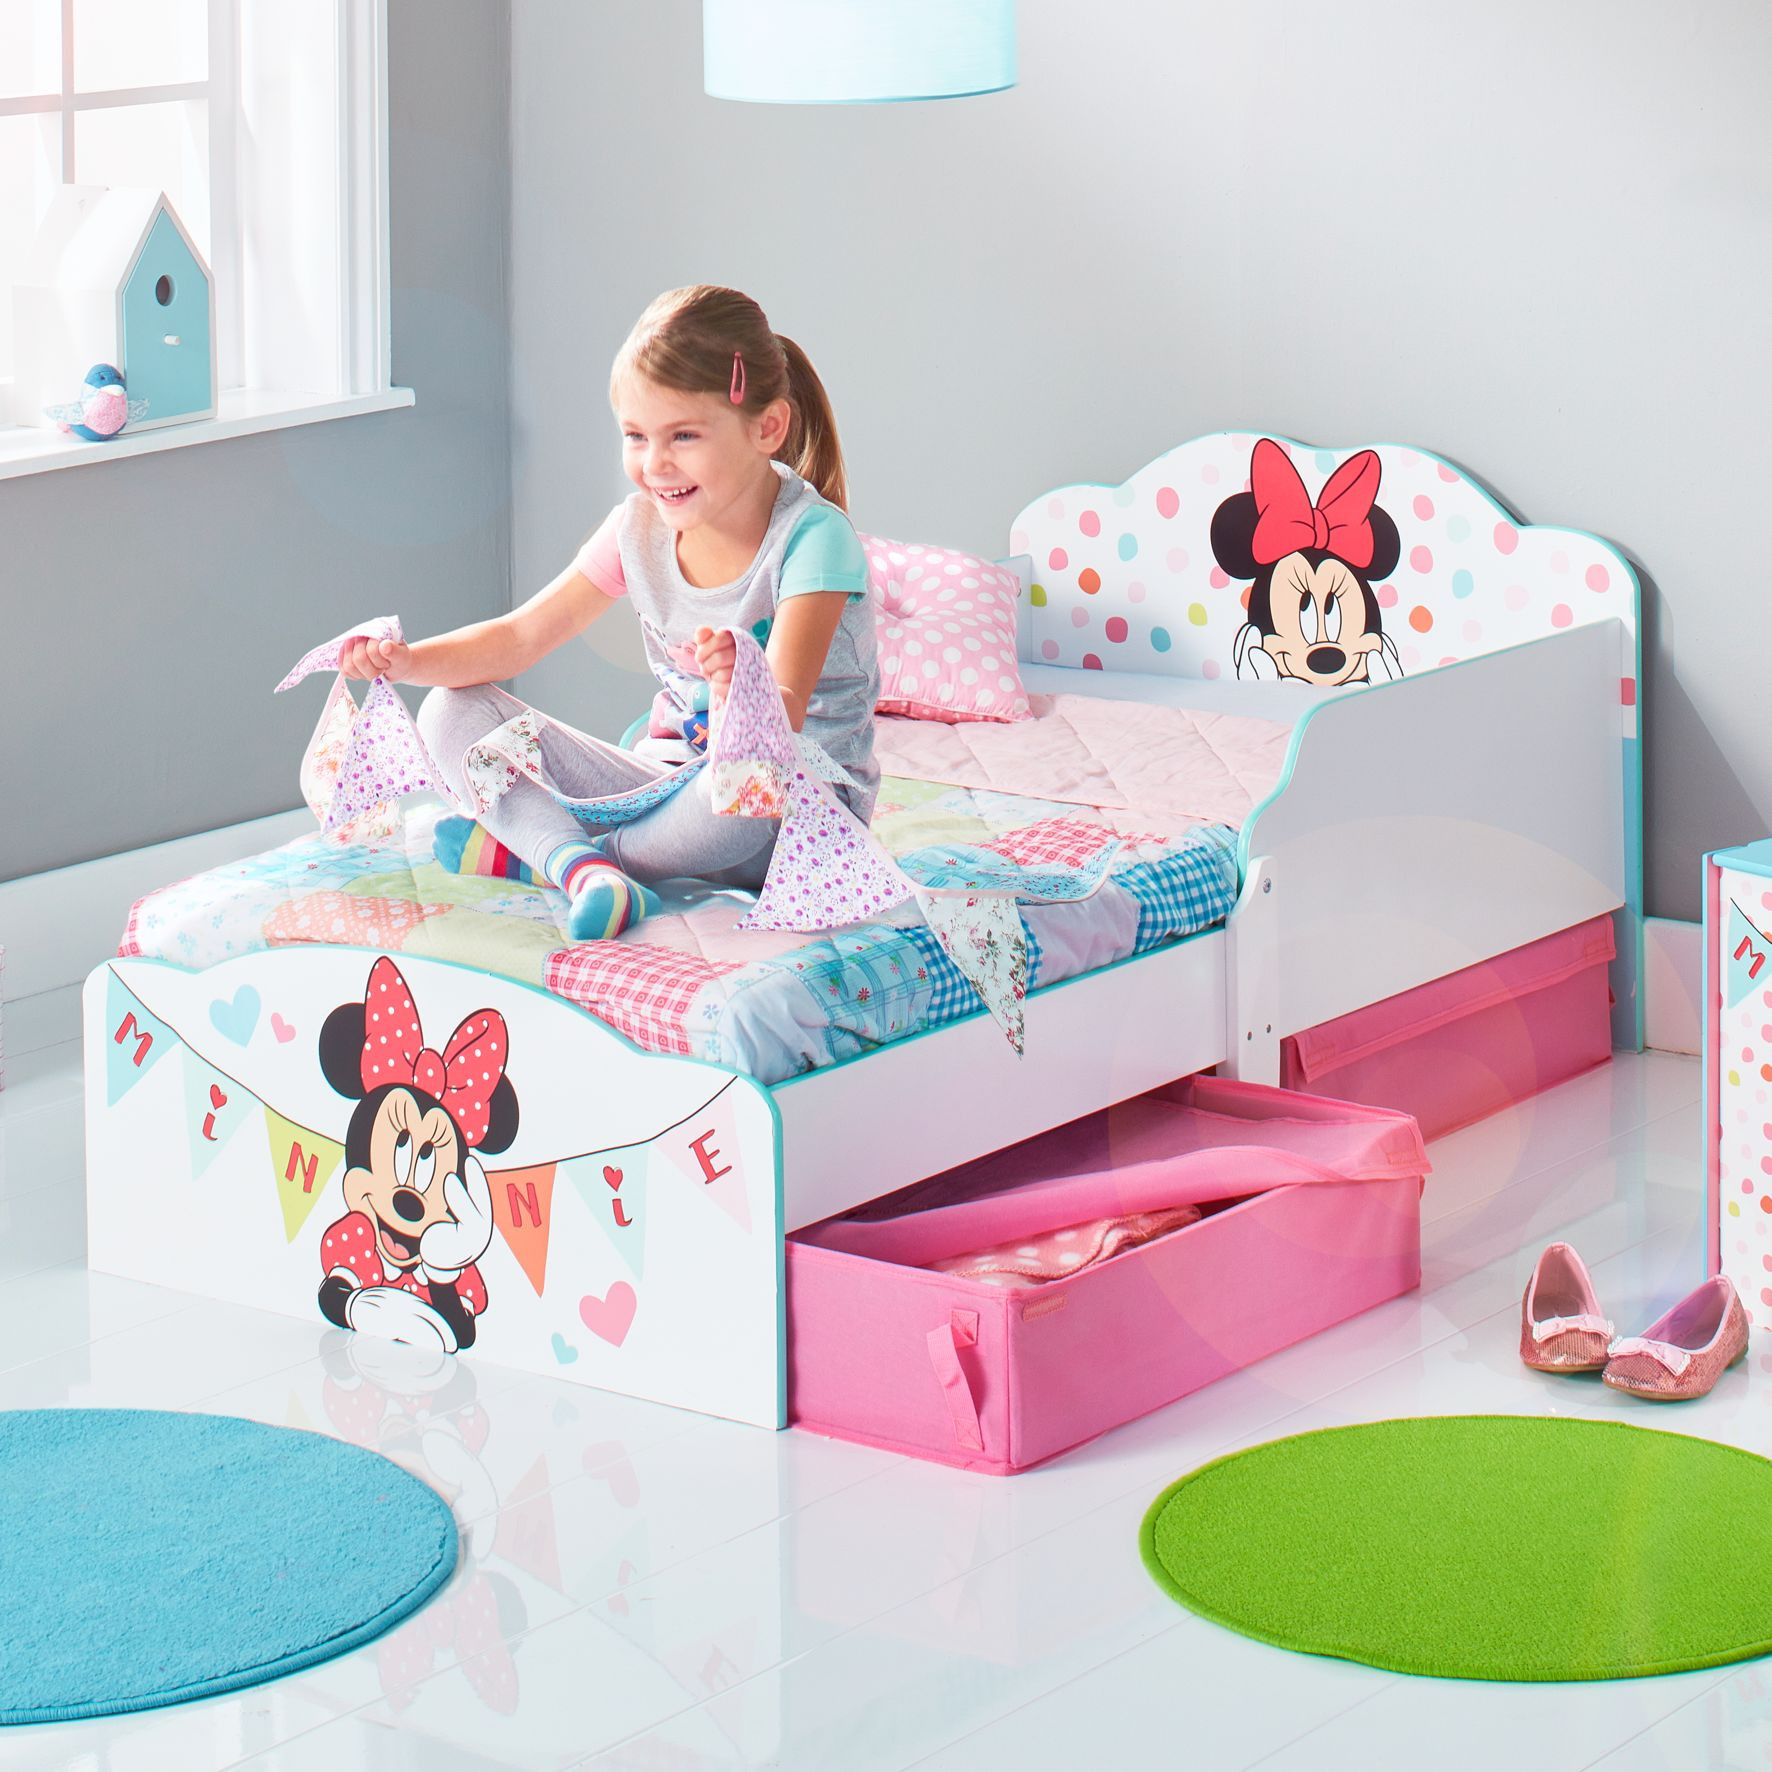 Childrens Beds With Underbed Storage
 Minnie Mouse Toddler Bed with underbed storage by HelloHome